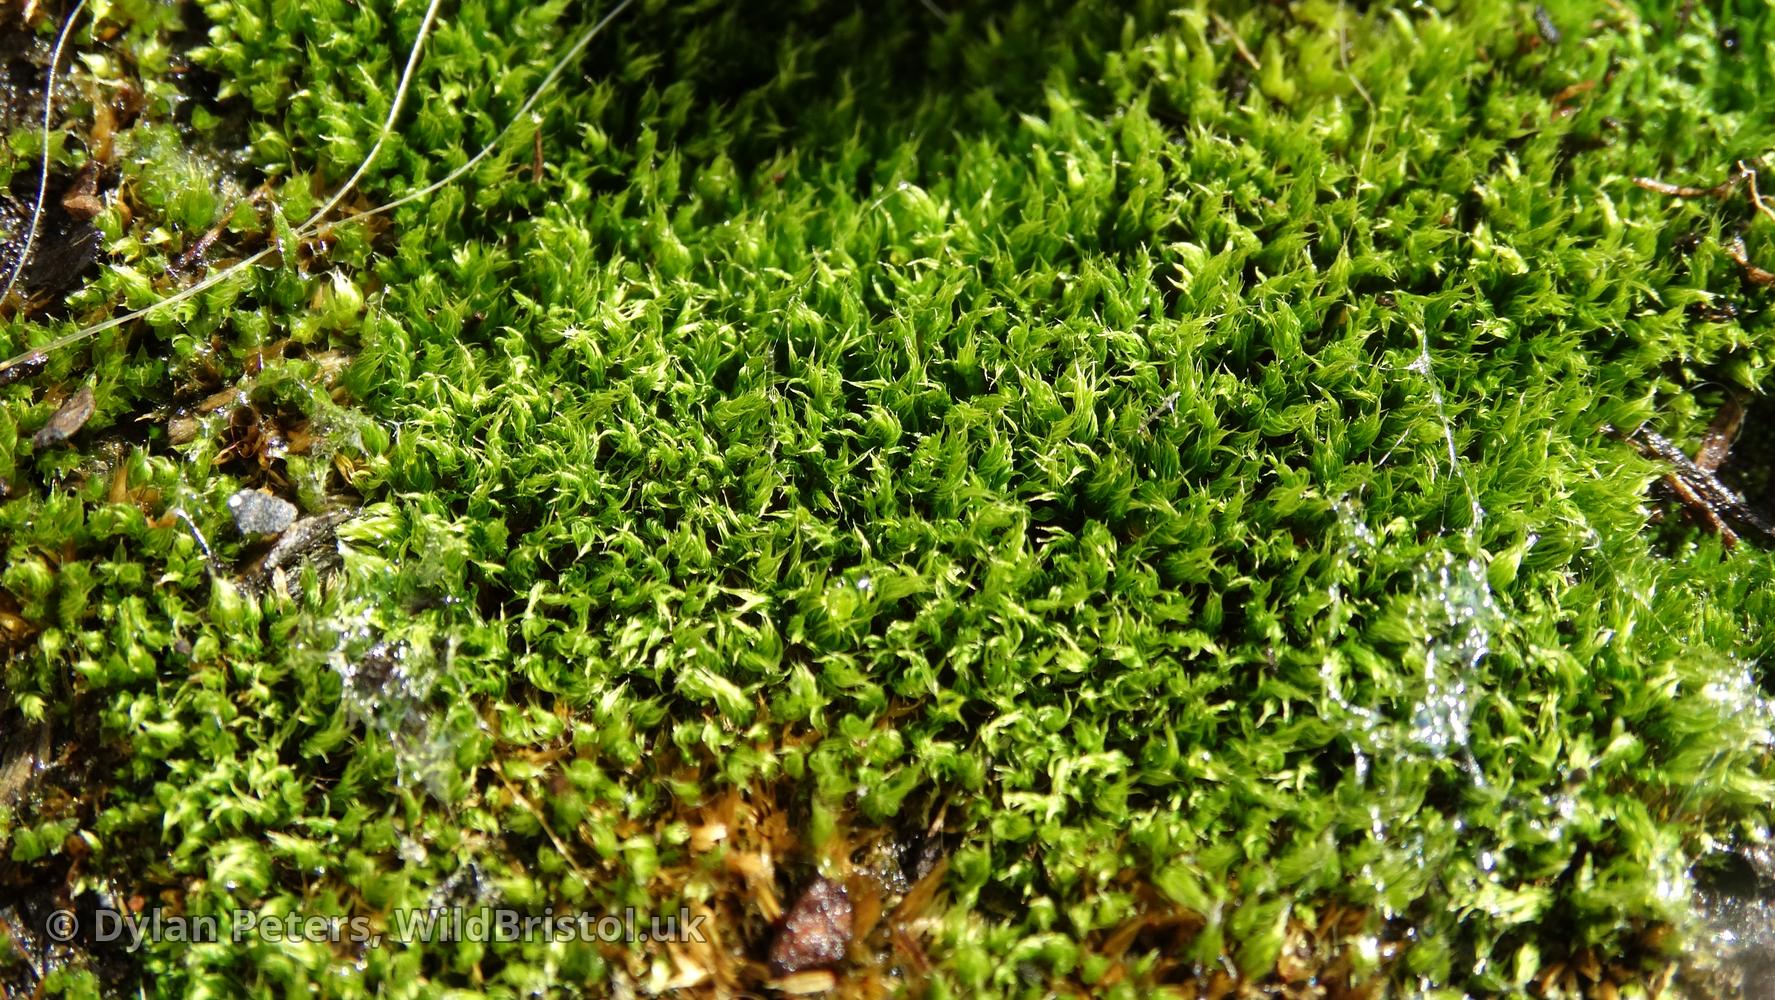 https://wildbristol.uk/groups/ferns-horsetails-mosses-liverworts/capillary-thread-moss/